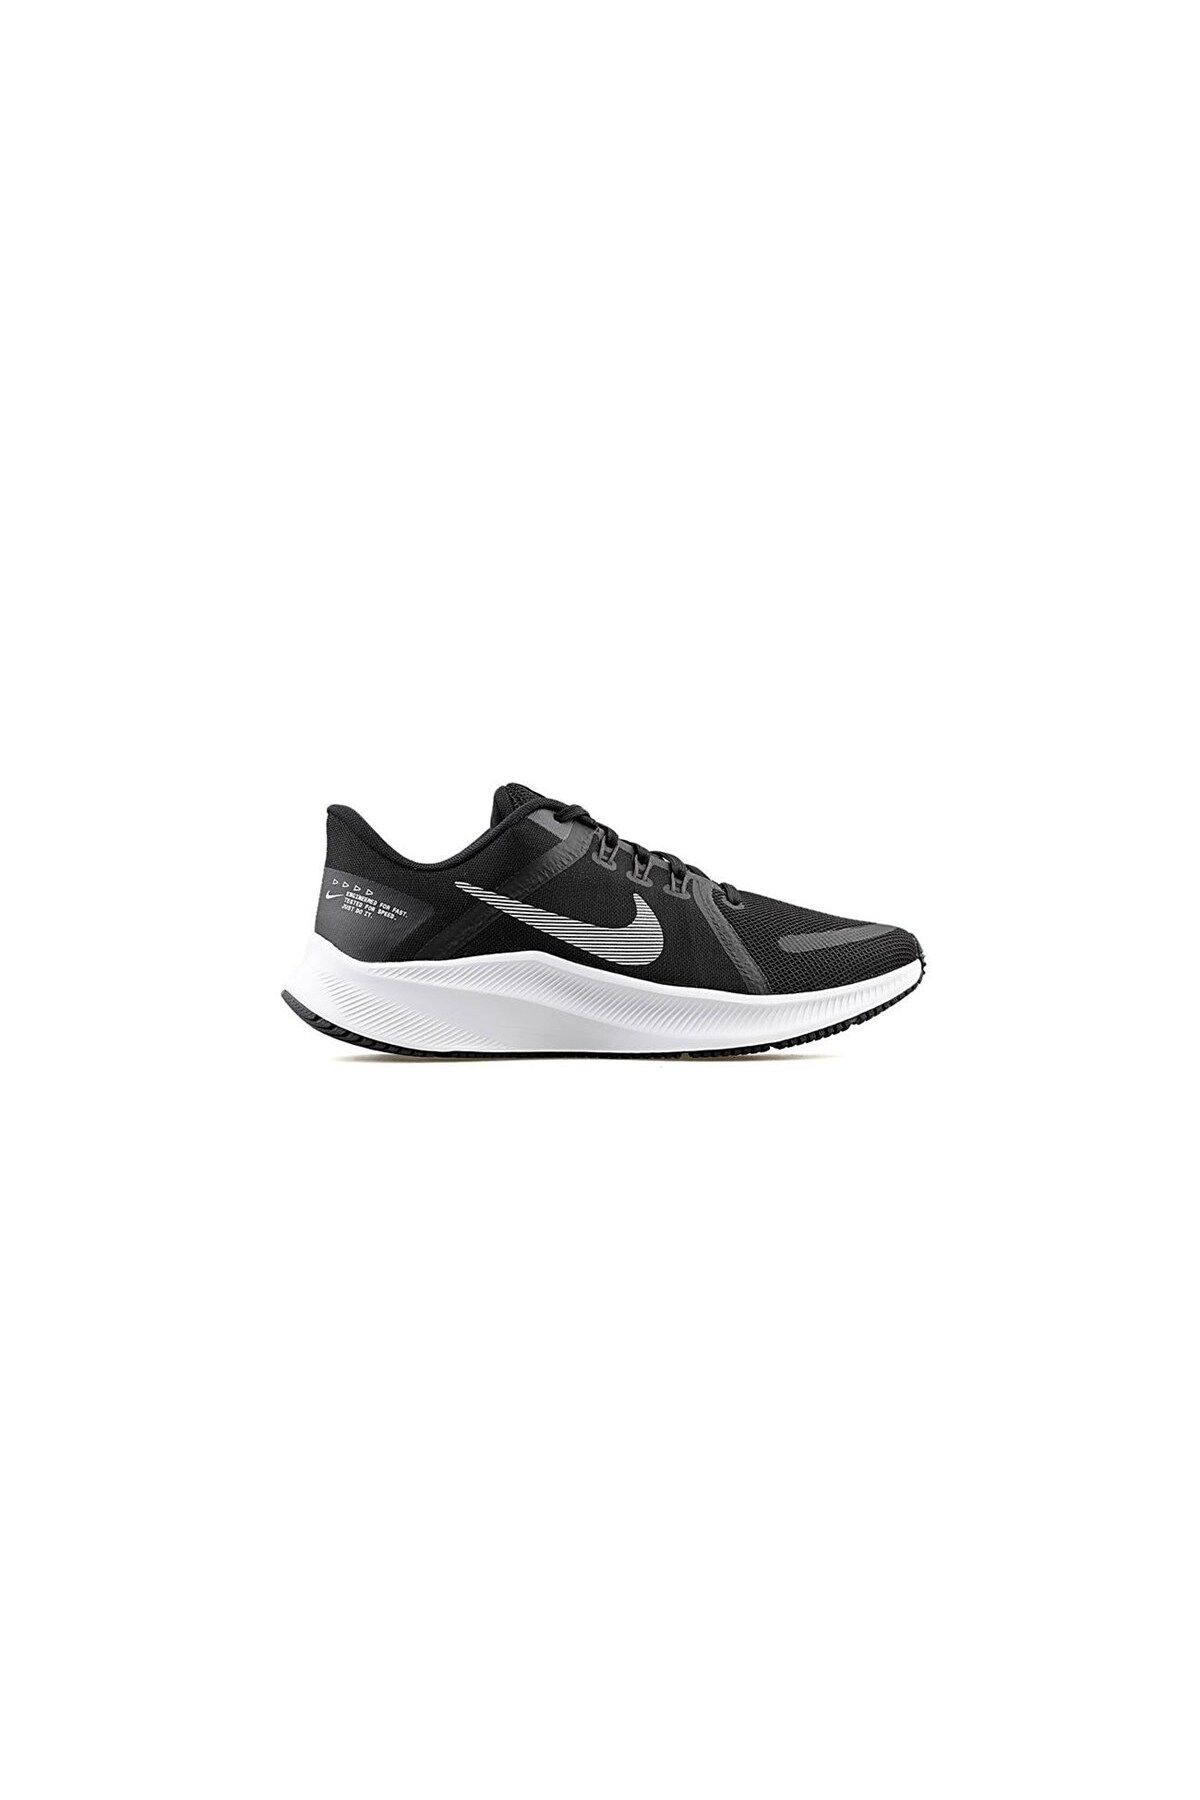 Nike Quest 4 Erkek Yol Koşu Ayakkabısı Da1105-006